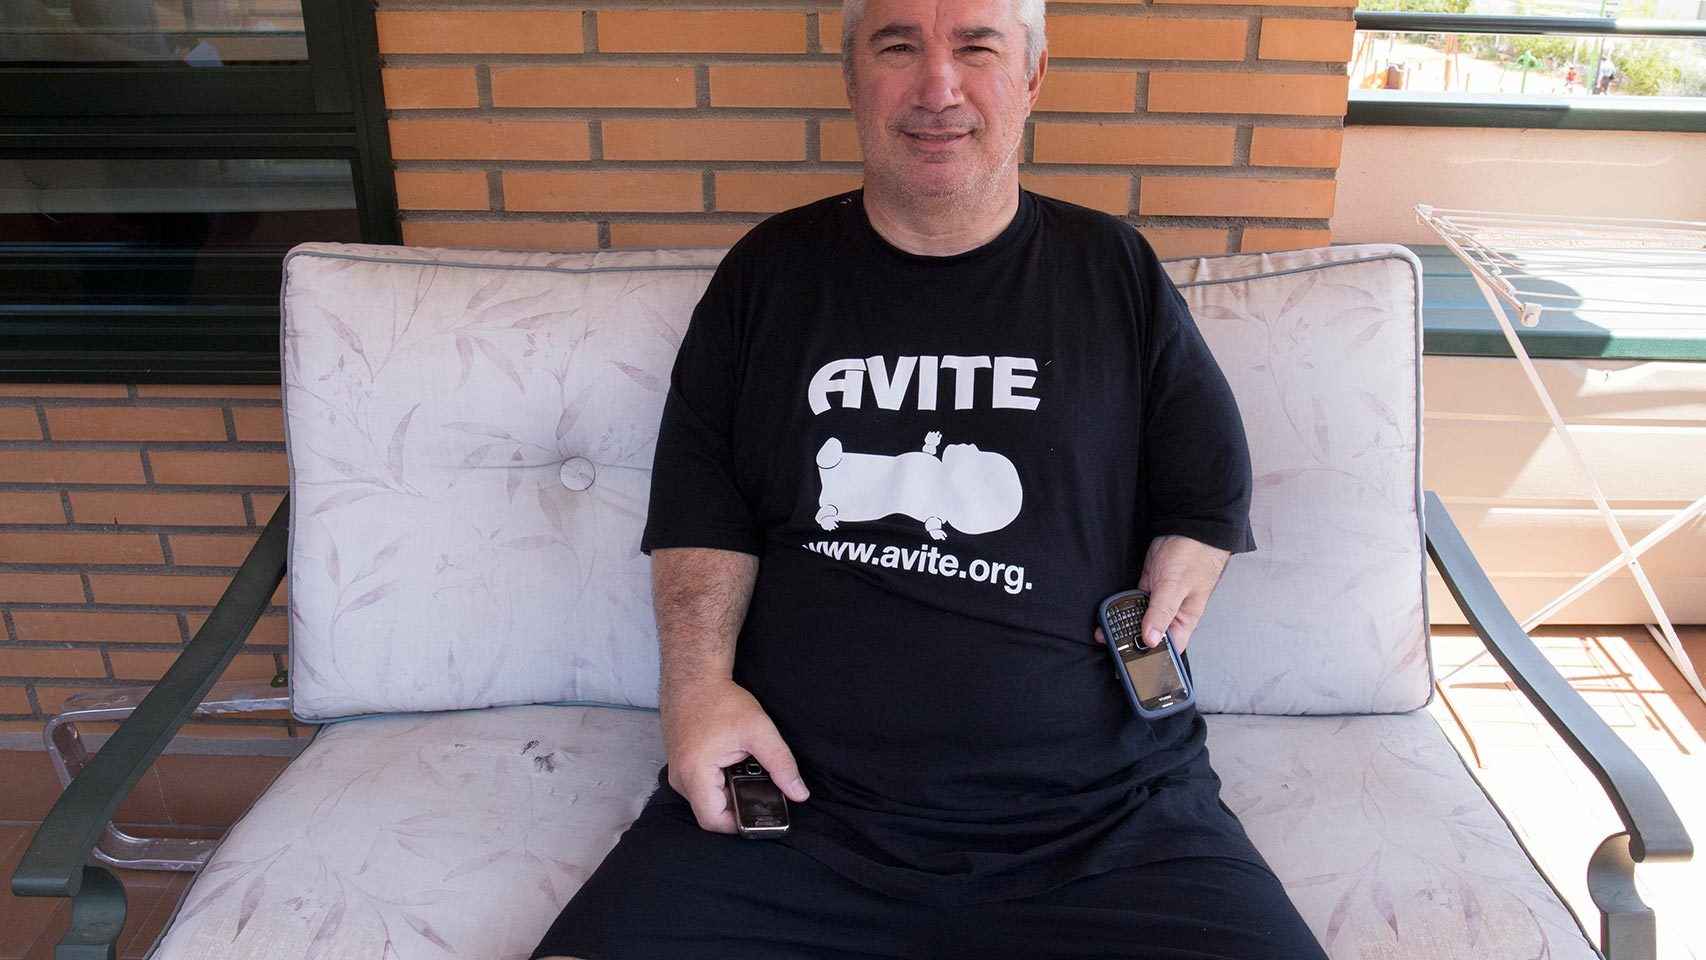 Rafael posa con su camiseta de Avite en la terraza de su piso.